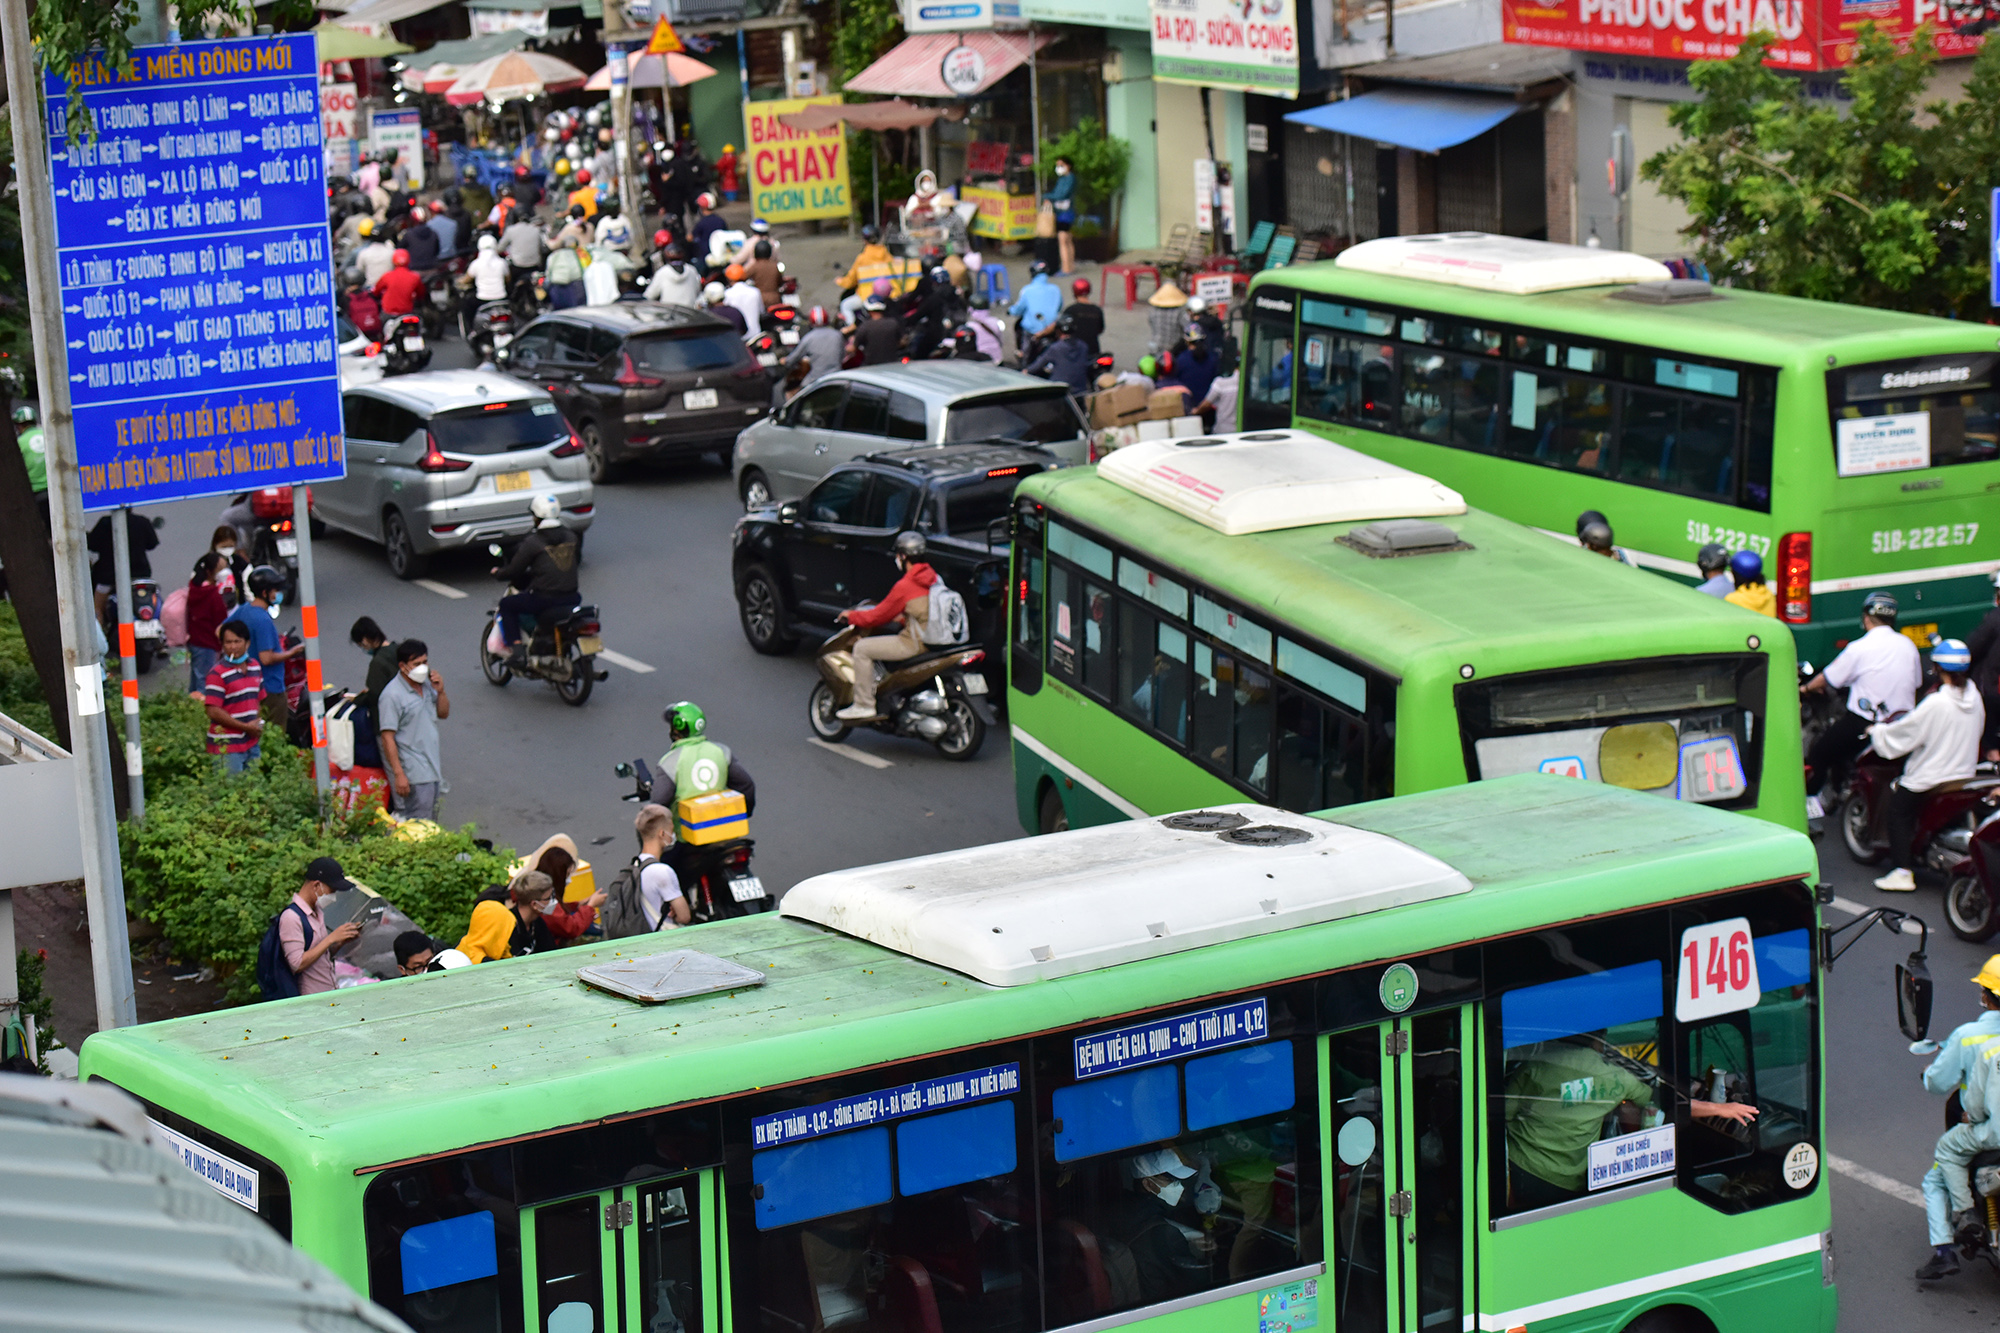 Hà Nội, TP.HCM lại tắc đường kinh hoàng sau nghỉ lễ, người dân chật vật tới nơi làm việc - 29